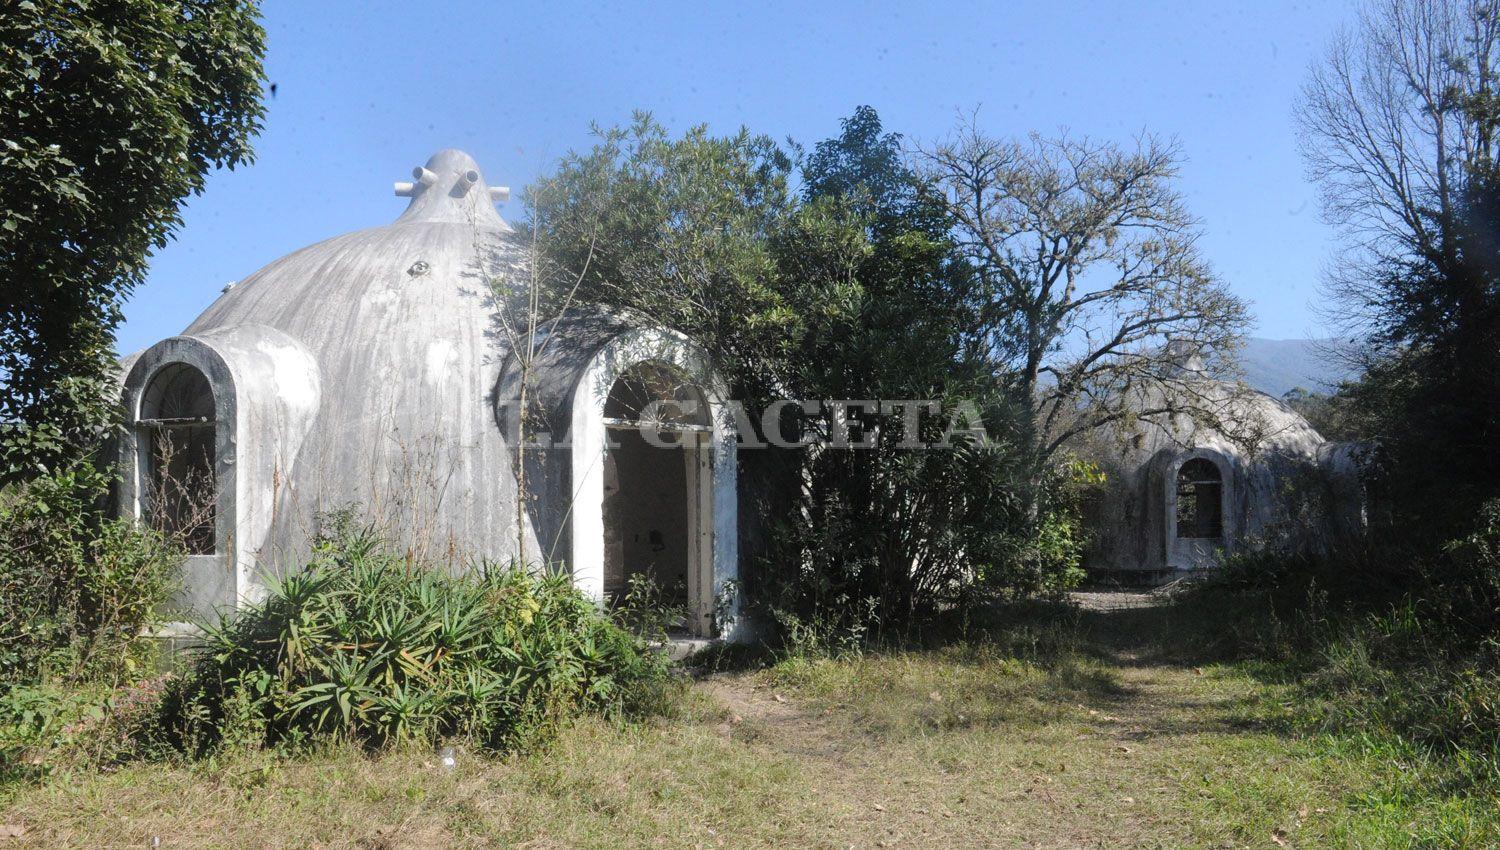 DESEADA POR TODOS. Las casa de los iglús es un punto que atrae a turistas y a tucumanos, por su diseño arquitectónico y sus rincones tenebrosos.